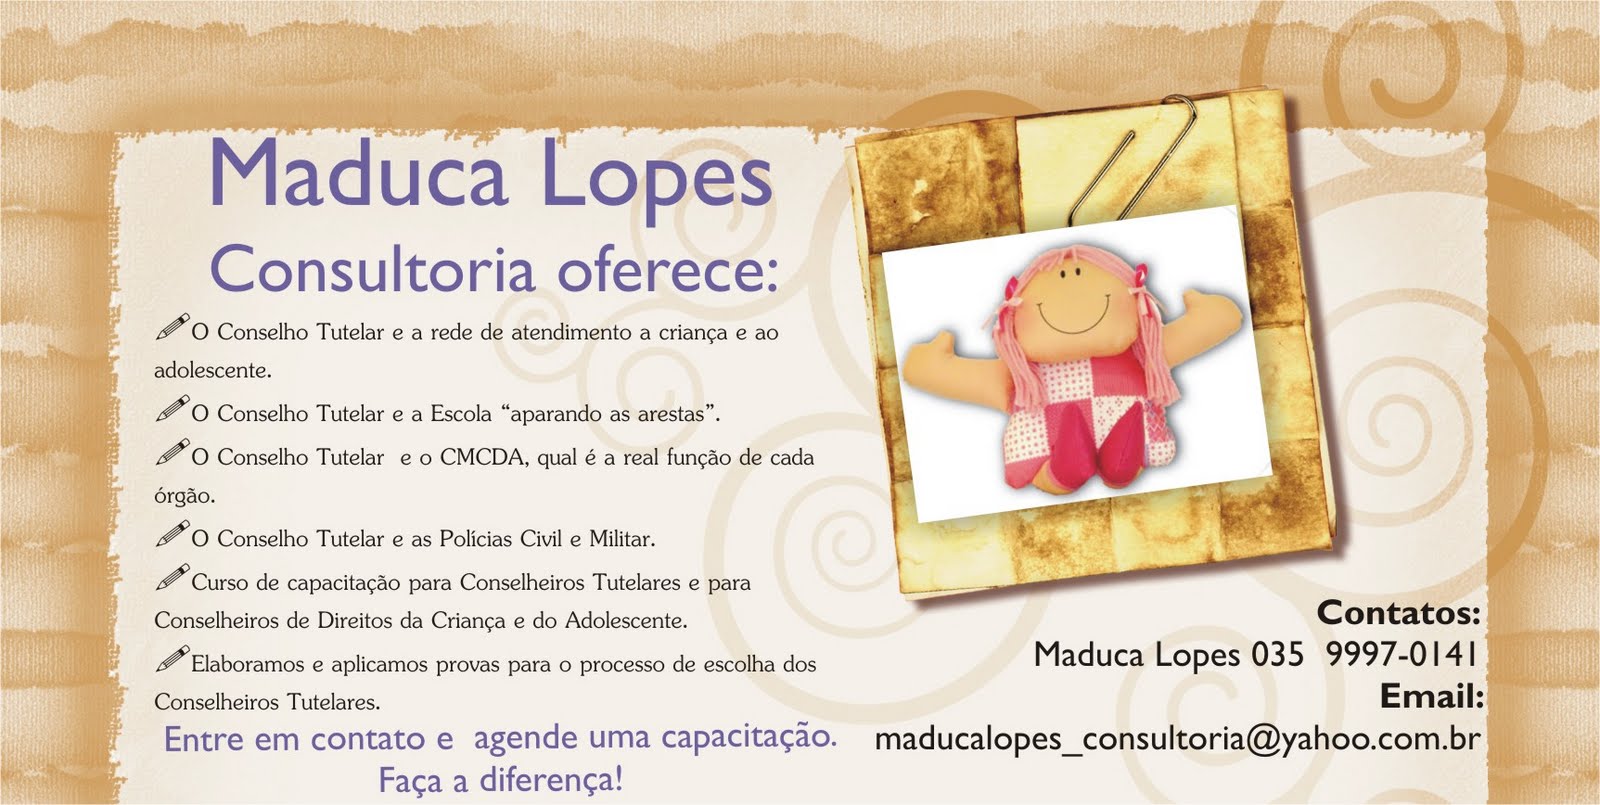 Maduca Lopes Consultoria